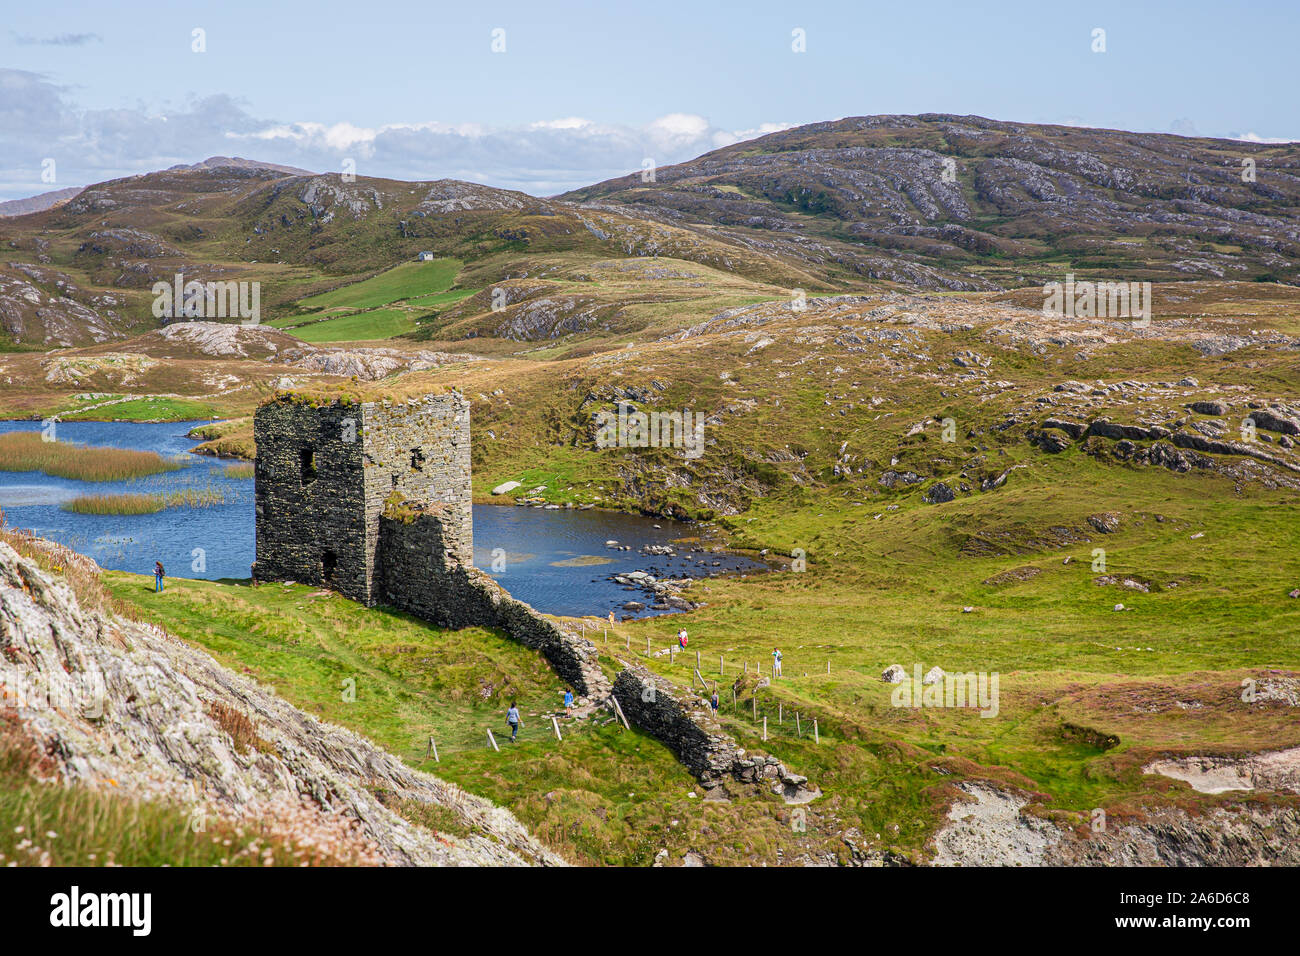 Scenic ruines de trois châteaux tête ou Dunlough château situé en haut des falaises à l'extrémité nord de la péninsule de Mizen. Paysages irlandais. Banque D'Images